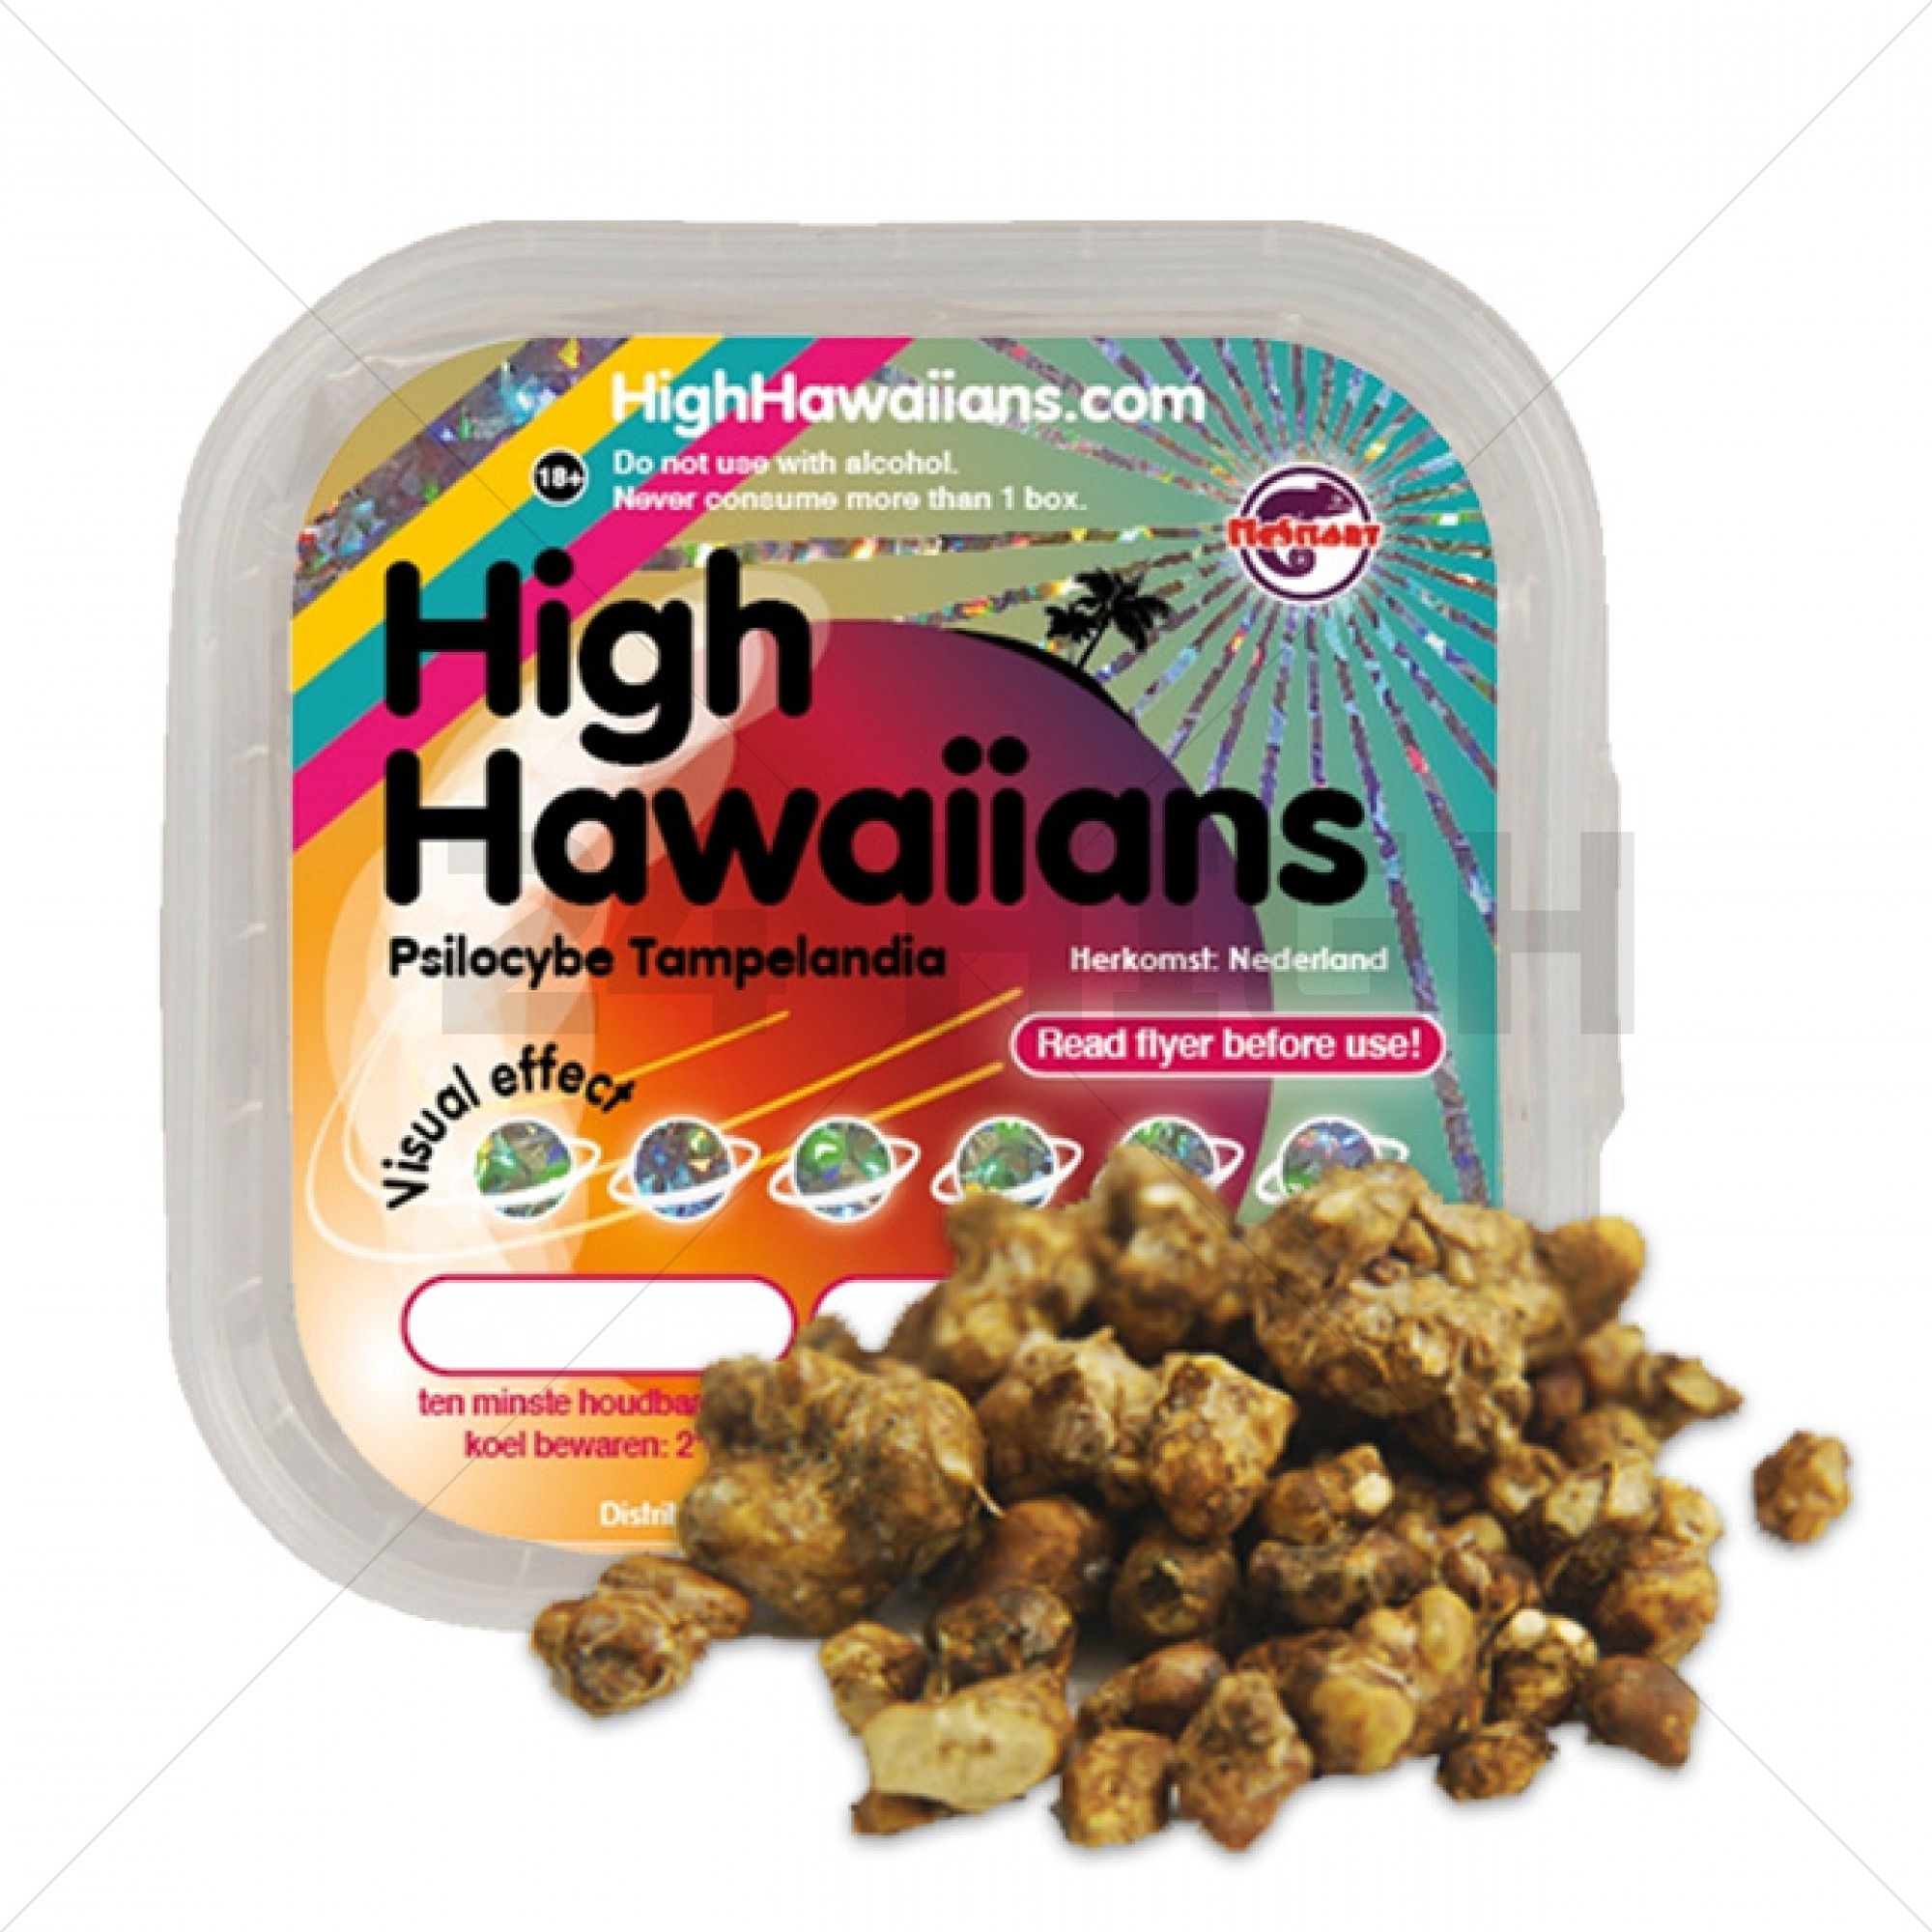 High Hawaiians Truffles